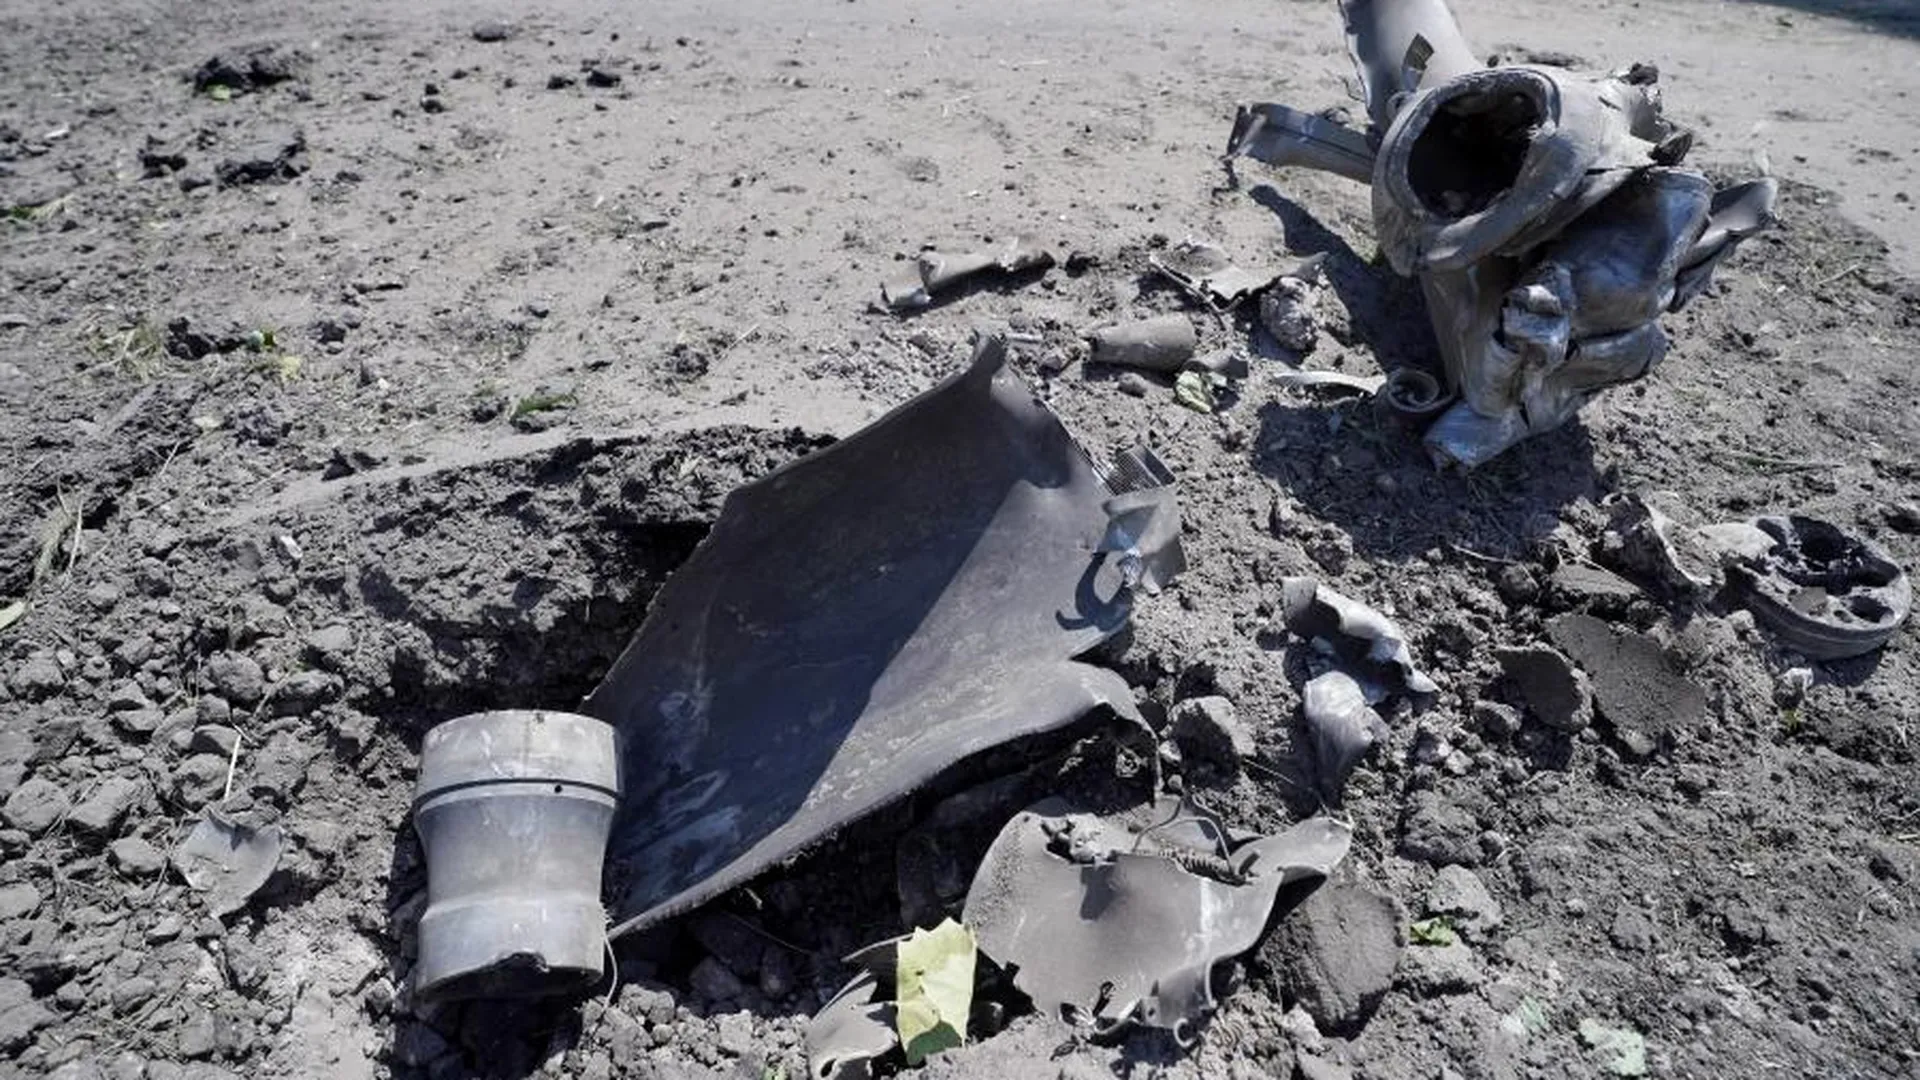 ВСУ нанесли удар в район перинатального центра в Донецке